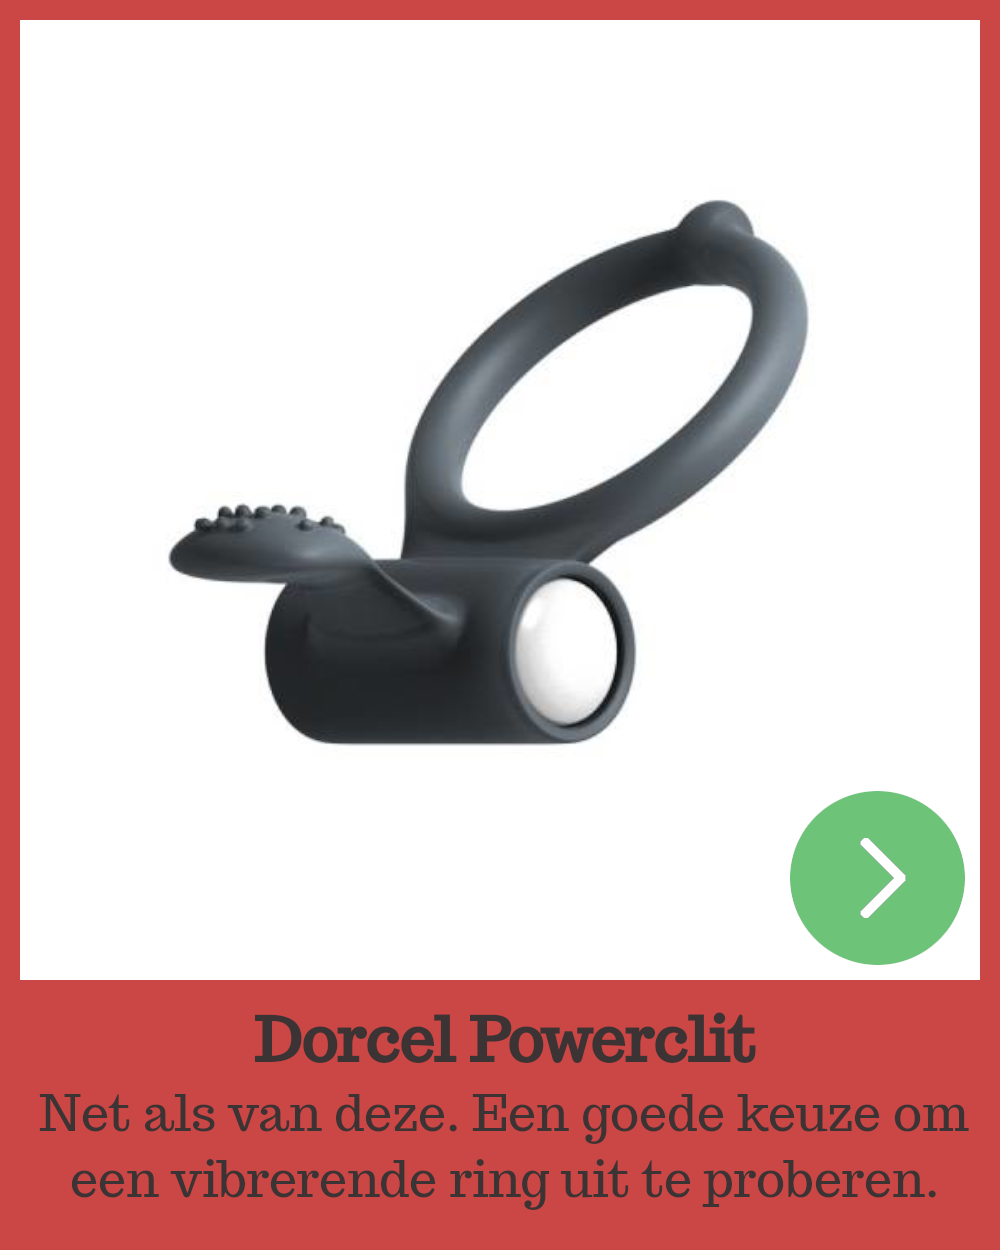 Dorcel Powerclit, vibrerende cockring